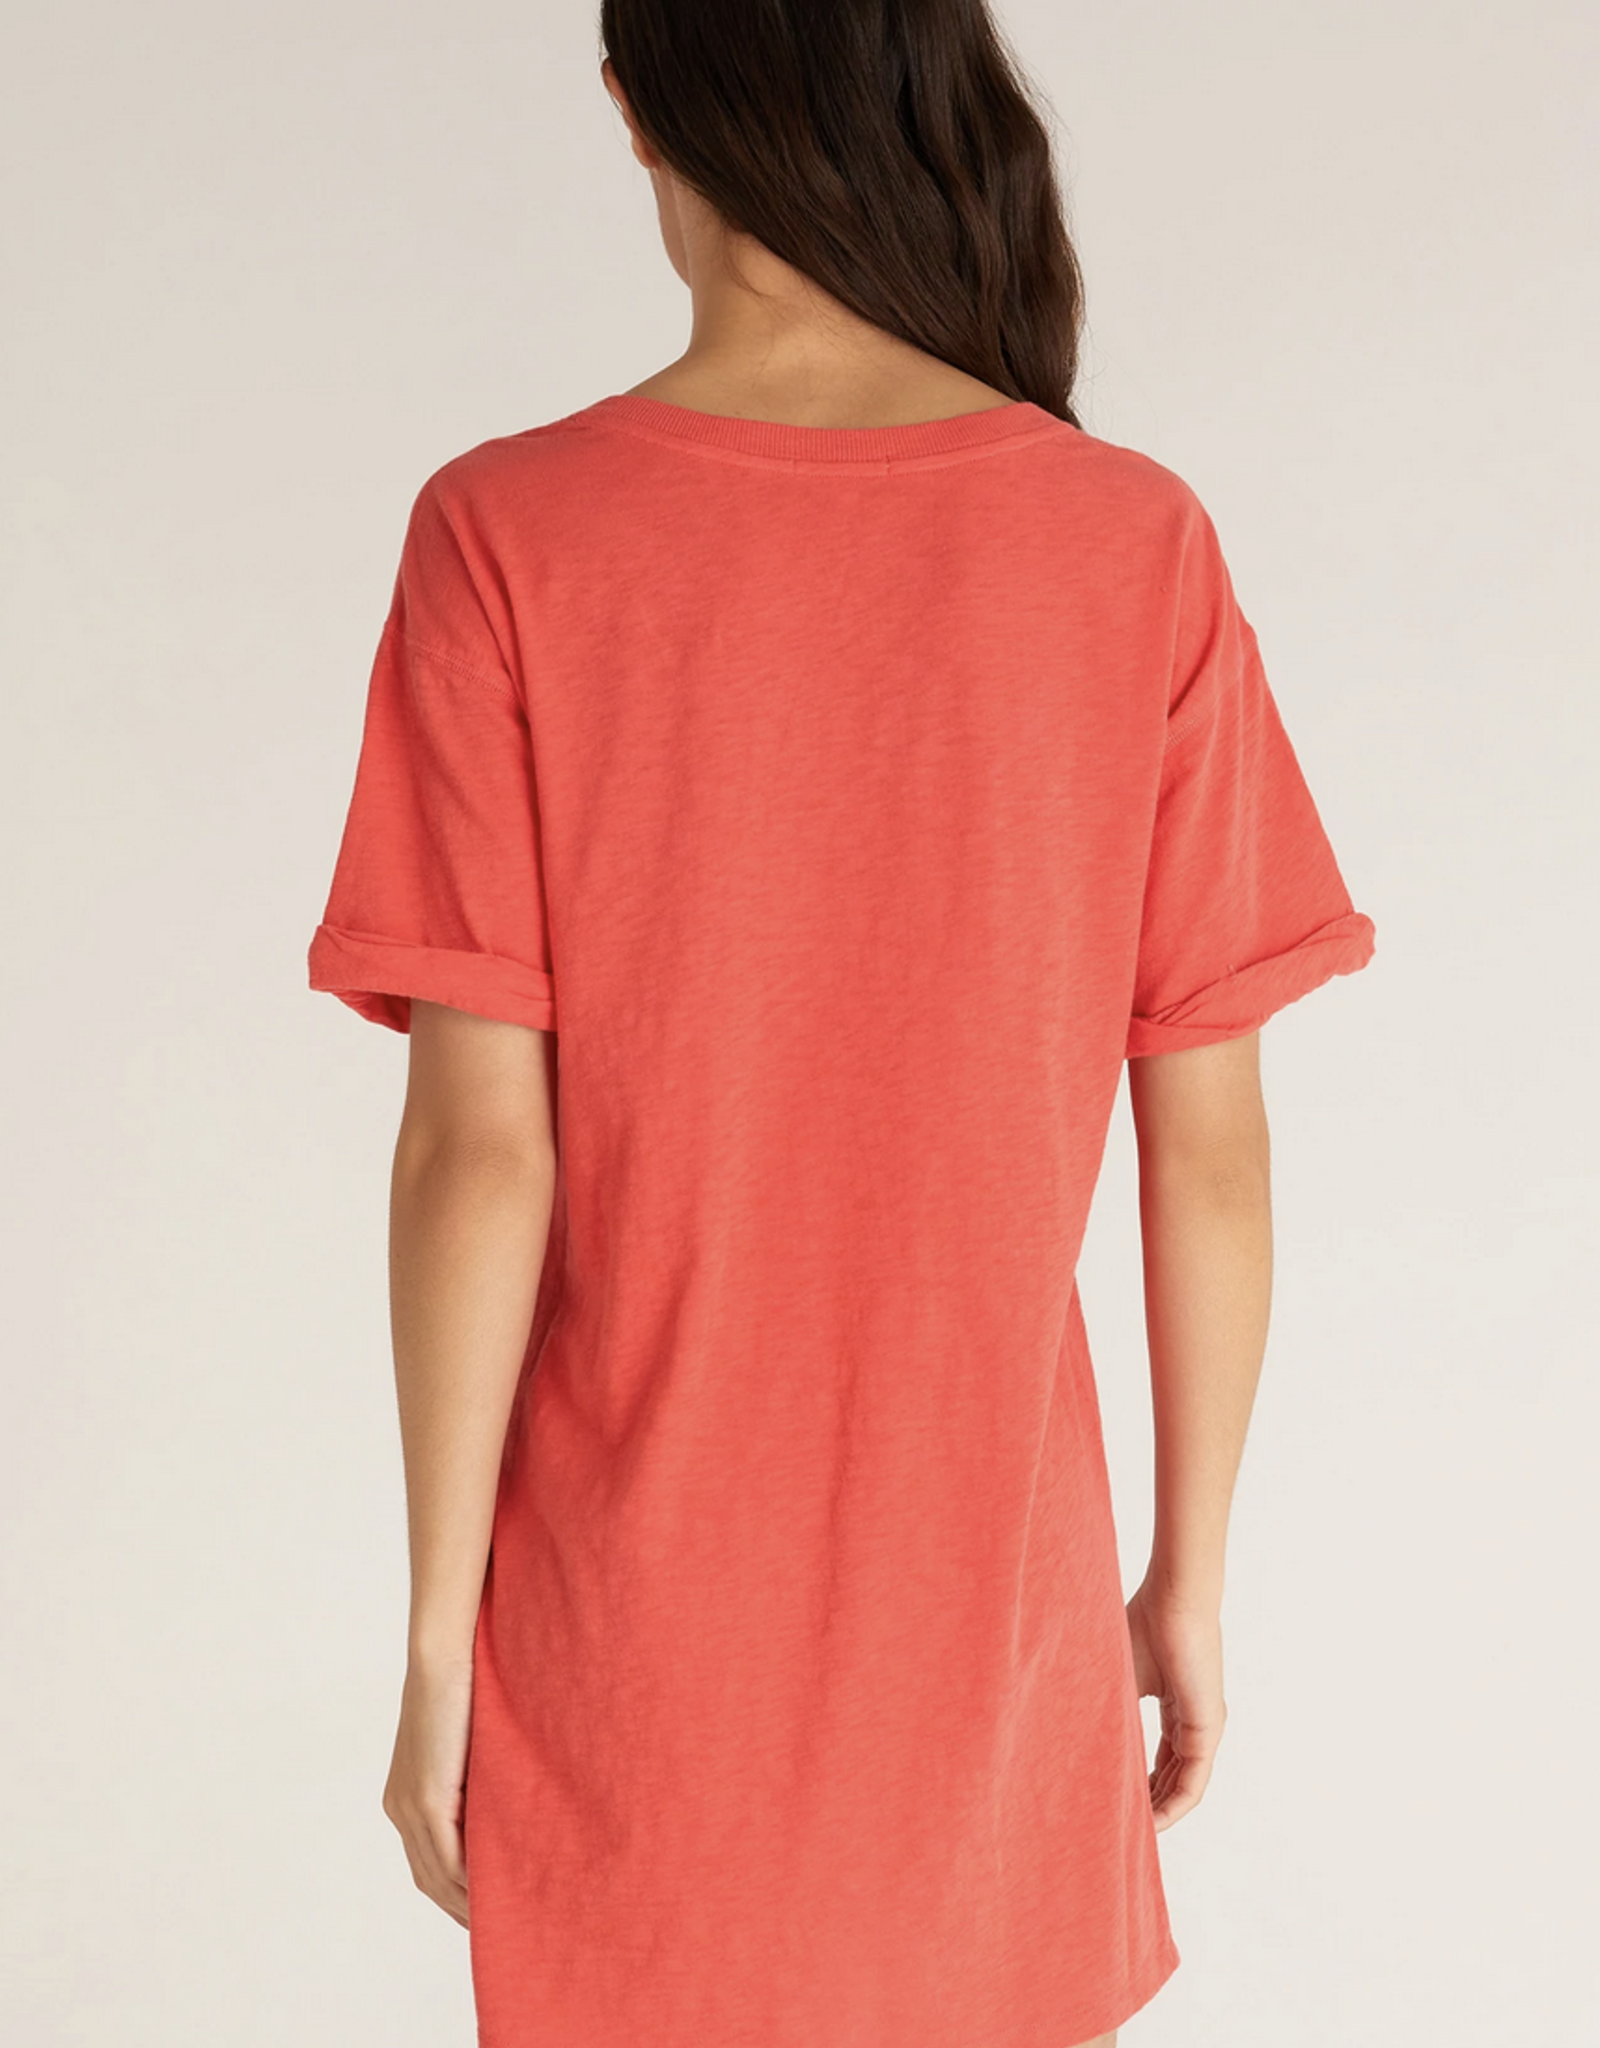 Z Supply V-Neck T-Shirt Dress